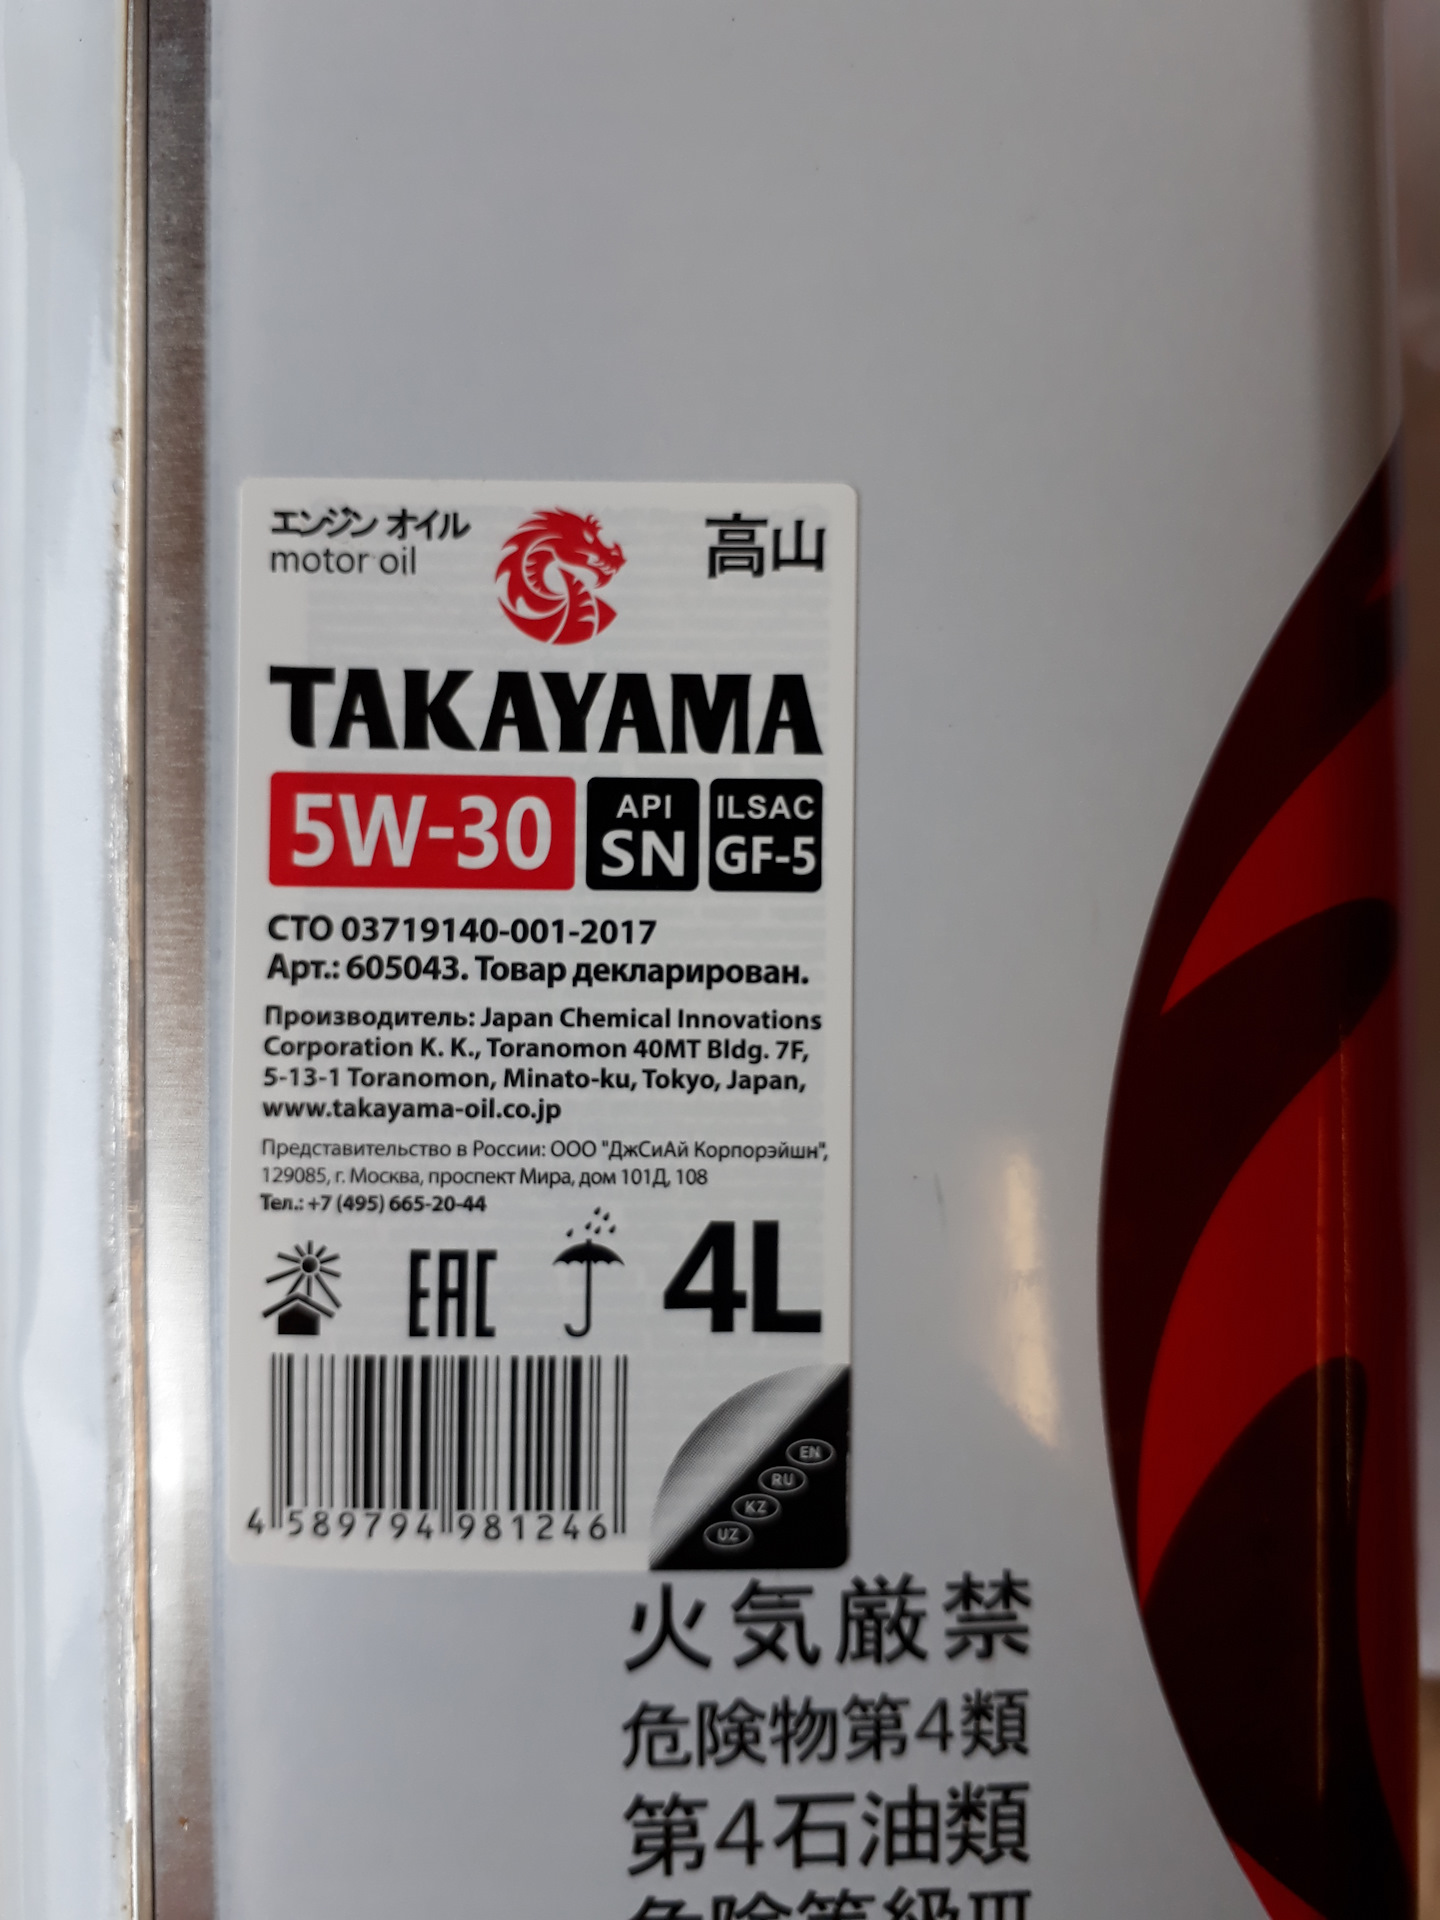 Японское масло отзывы. Японское моторное масло Takayama. Японские моторные масло 10v40. Масло Takayama производитель. Недорогие японские масла.